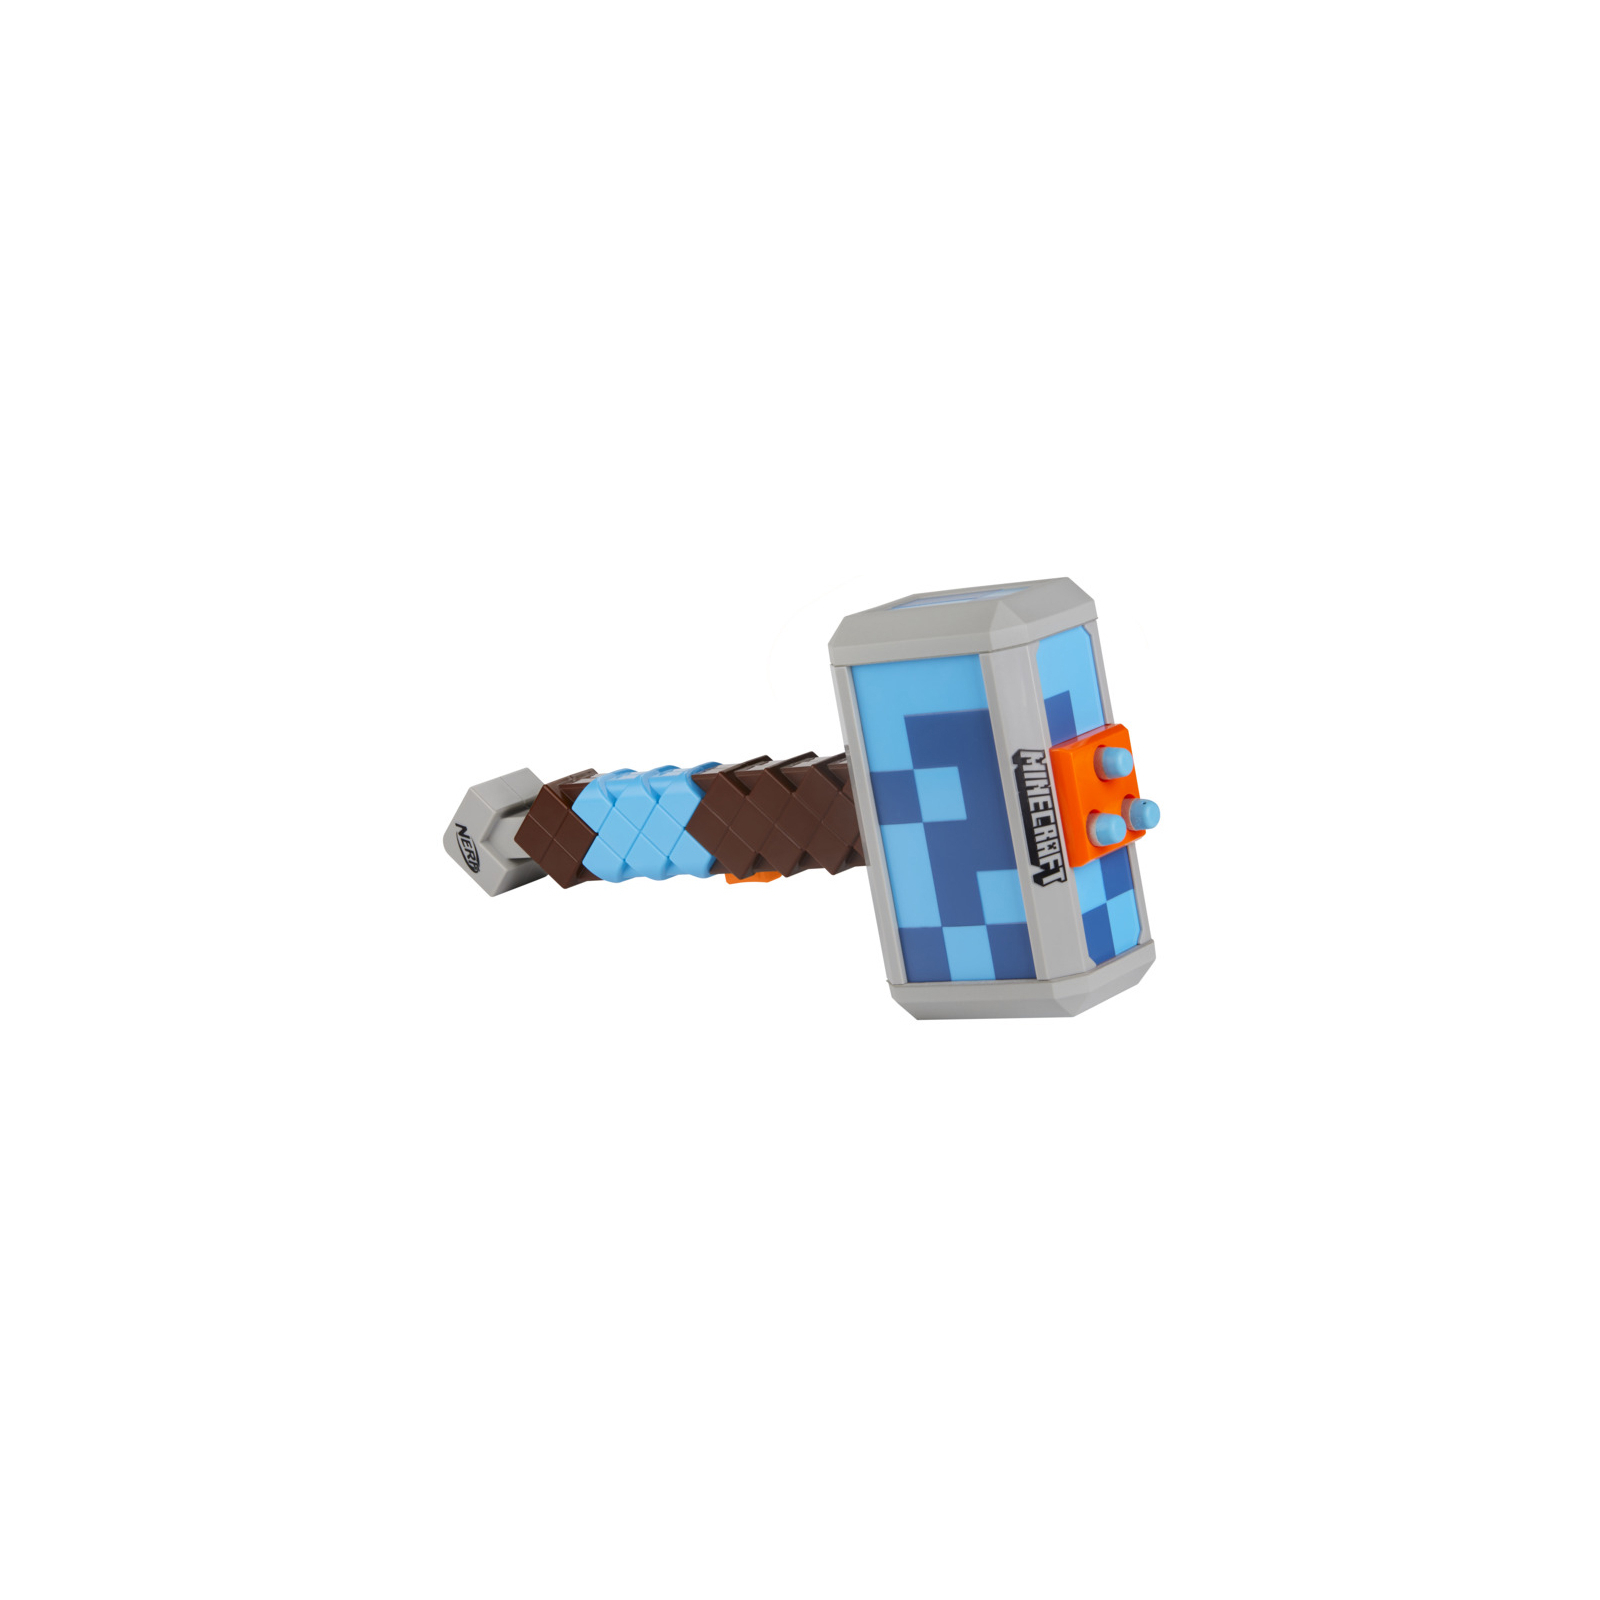 Игрушечное оружие Hasbro Nerf Minecraft Молот Штормландер (F4416) изображение 5